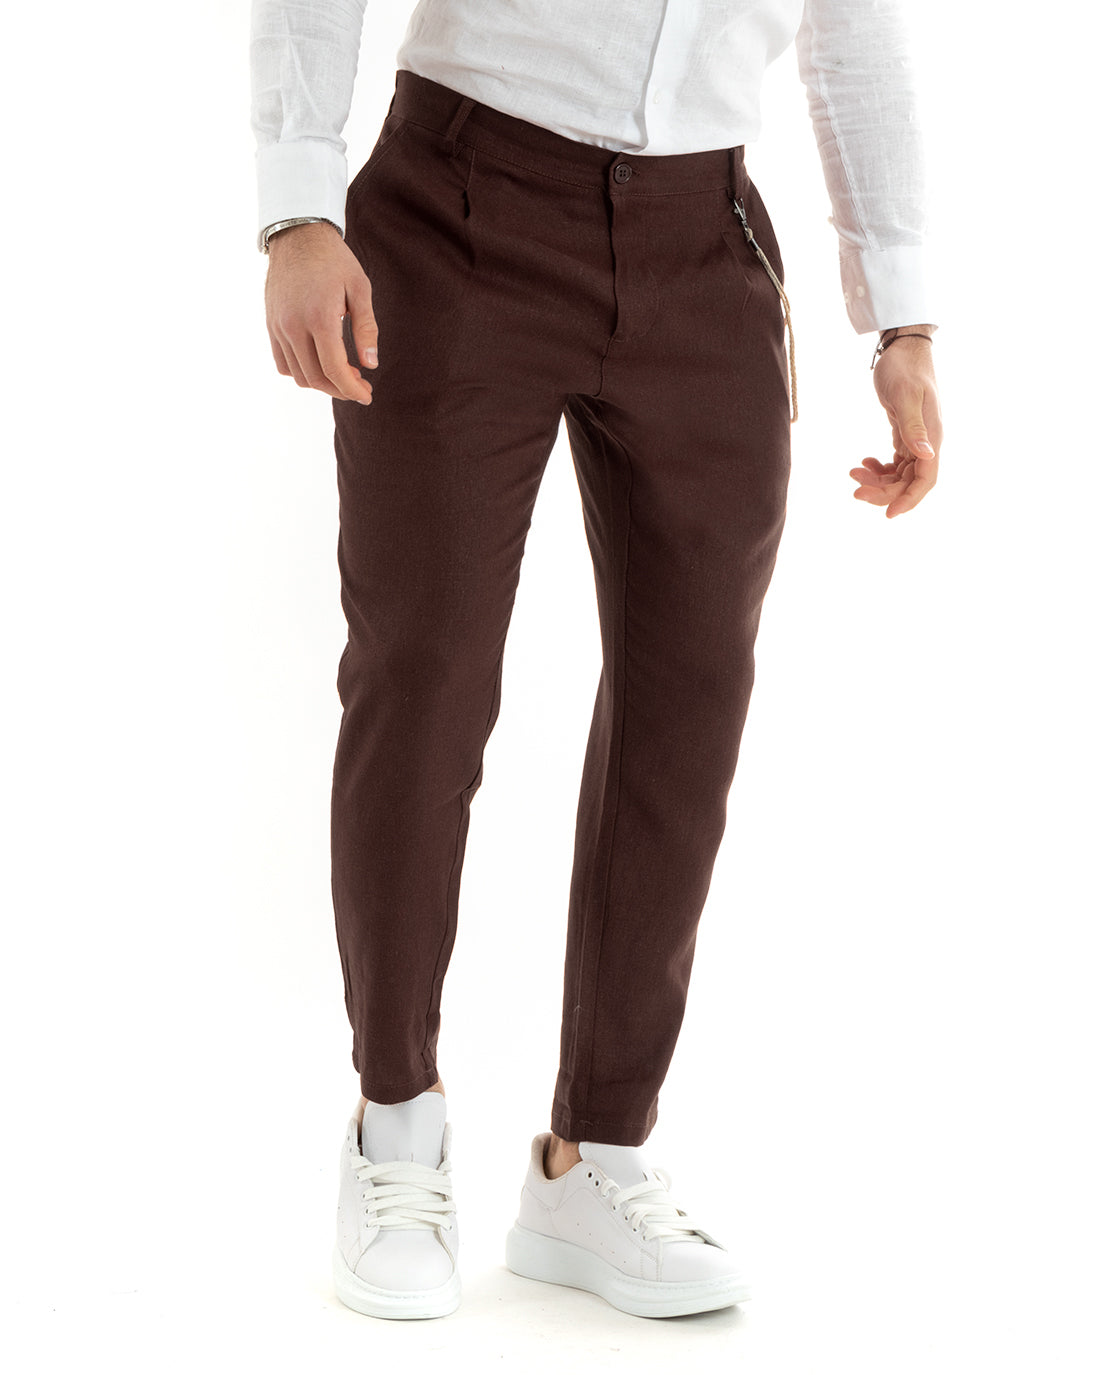 Pantaloni Uomo In Lino Tasca America Classico Sartoriale Comodo Casual Tinta Unita Marrone GIOSAL-P5800A